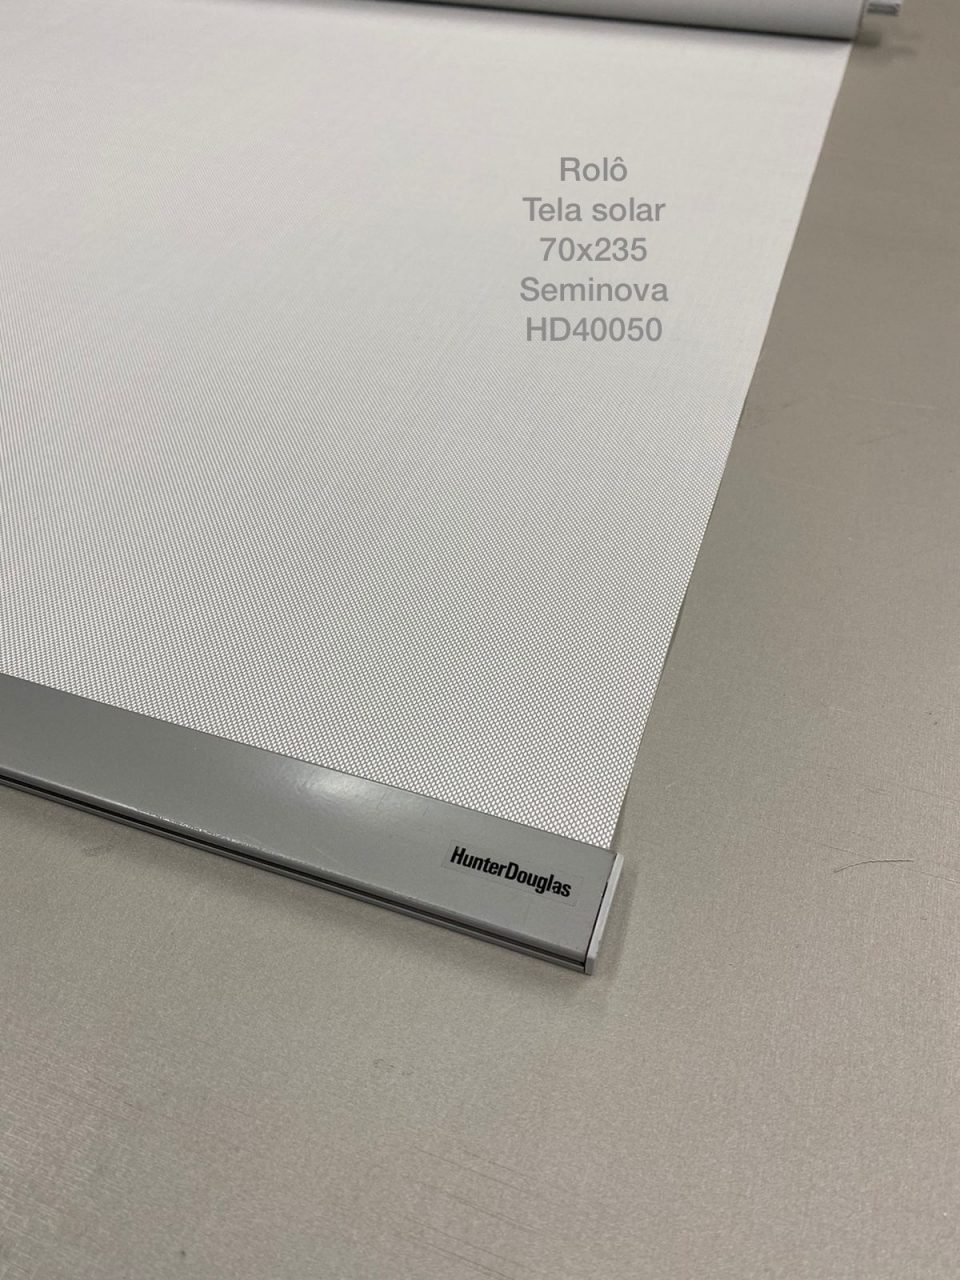 Rolô tela solar HD40050